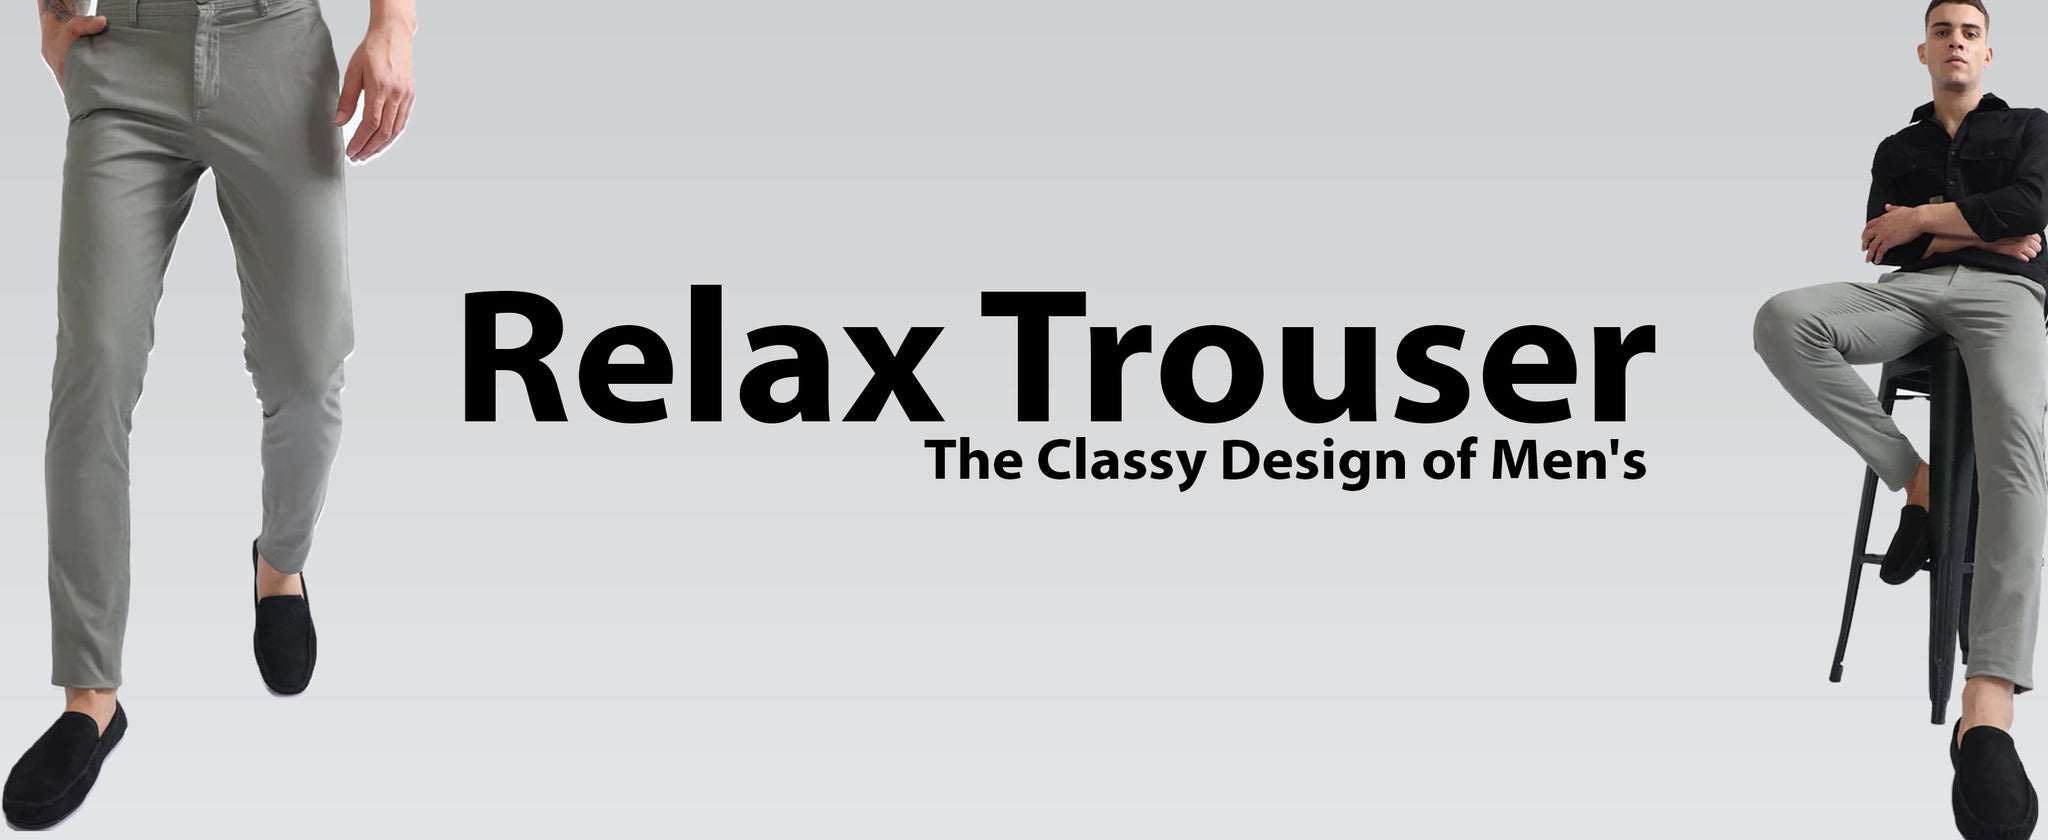 The Classy Design of Men's Relax Trouser